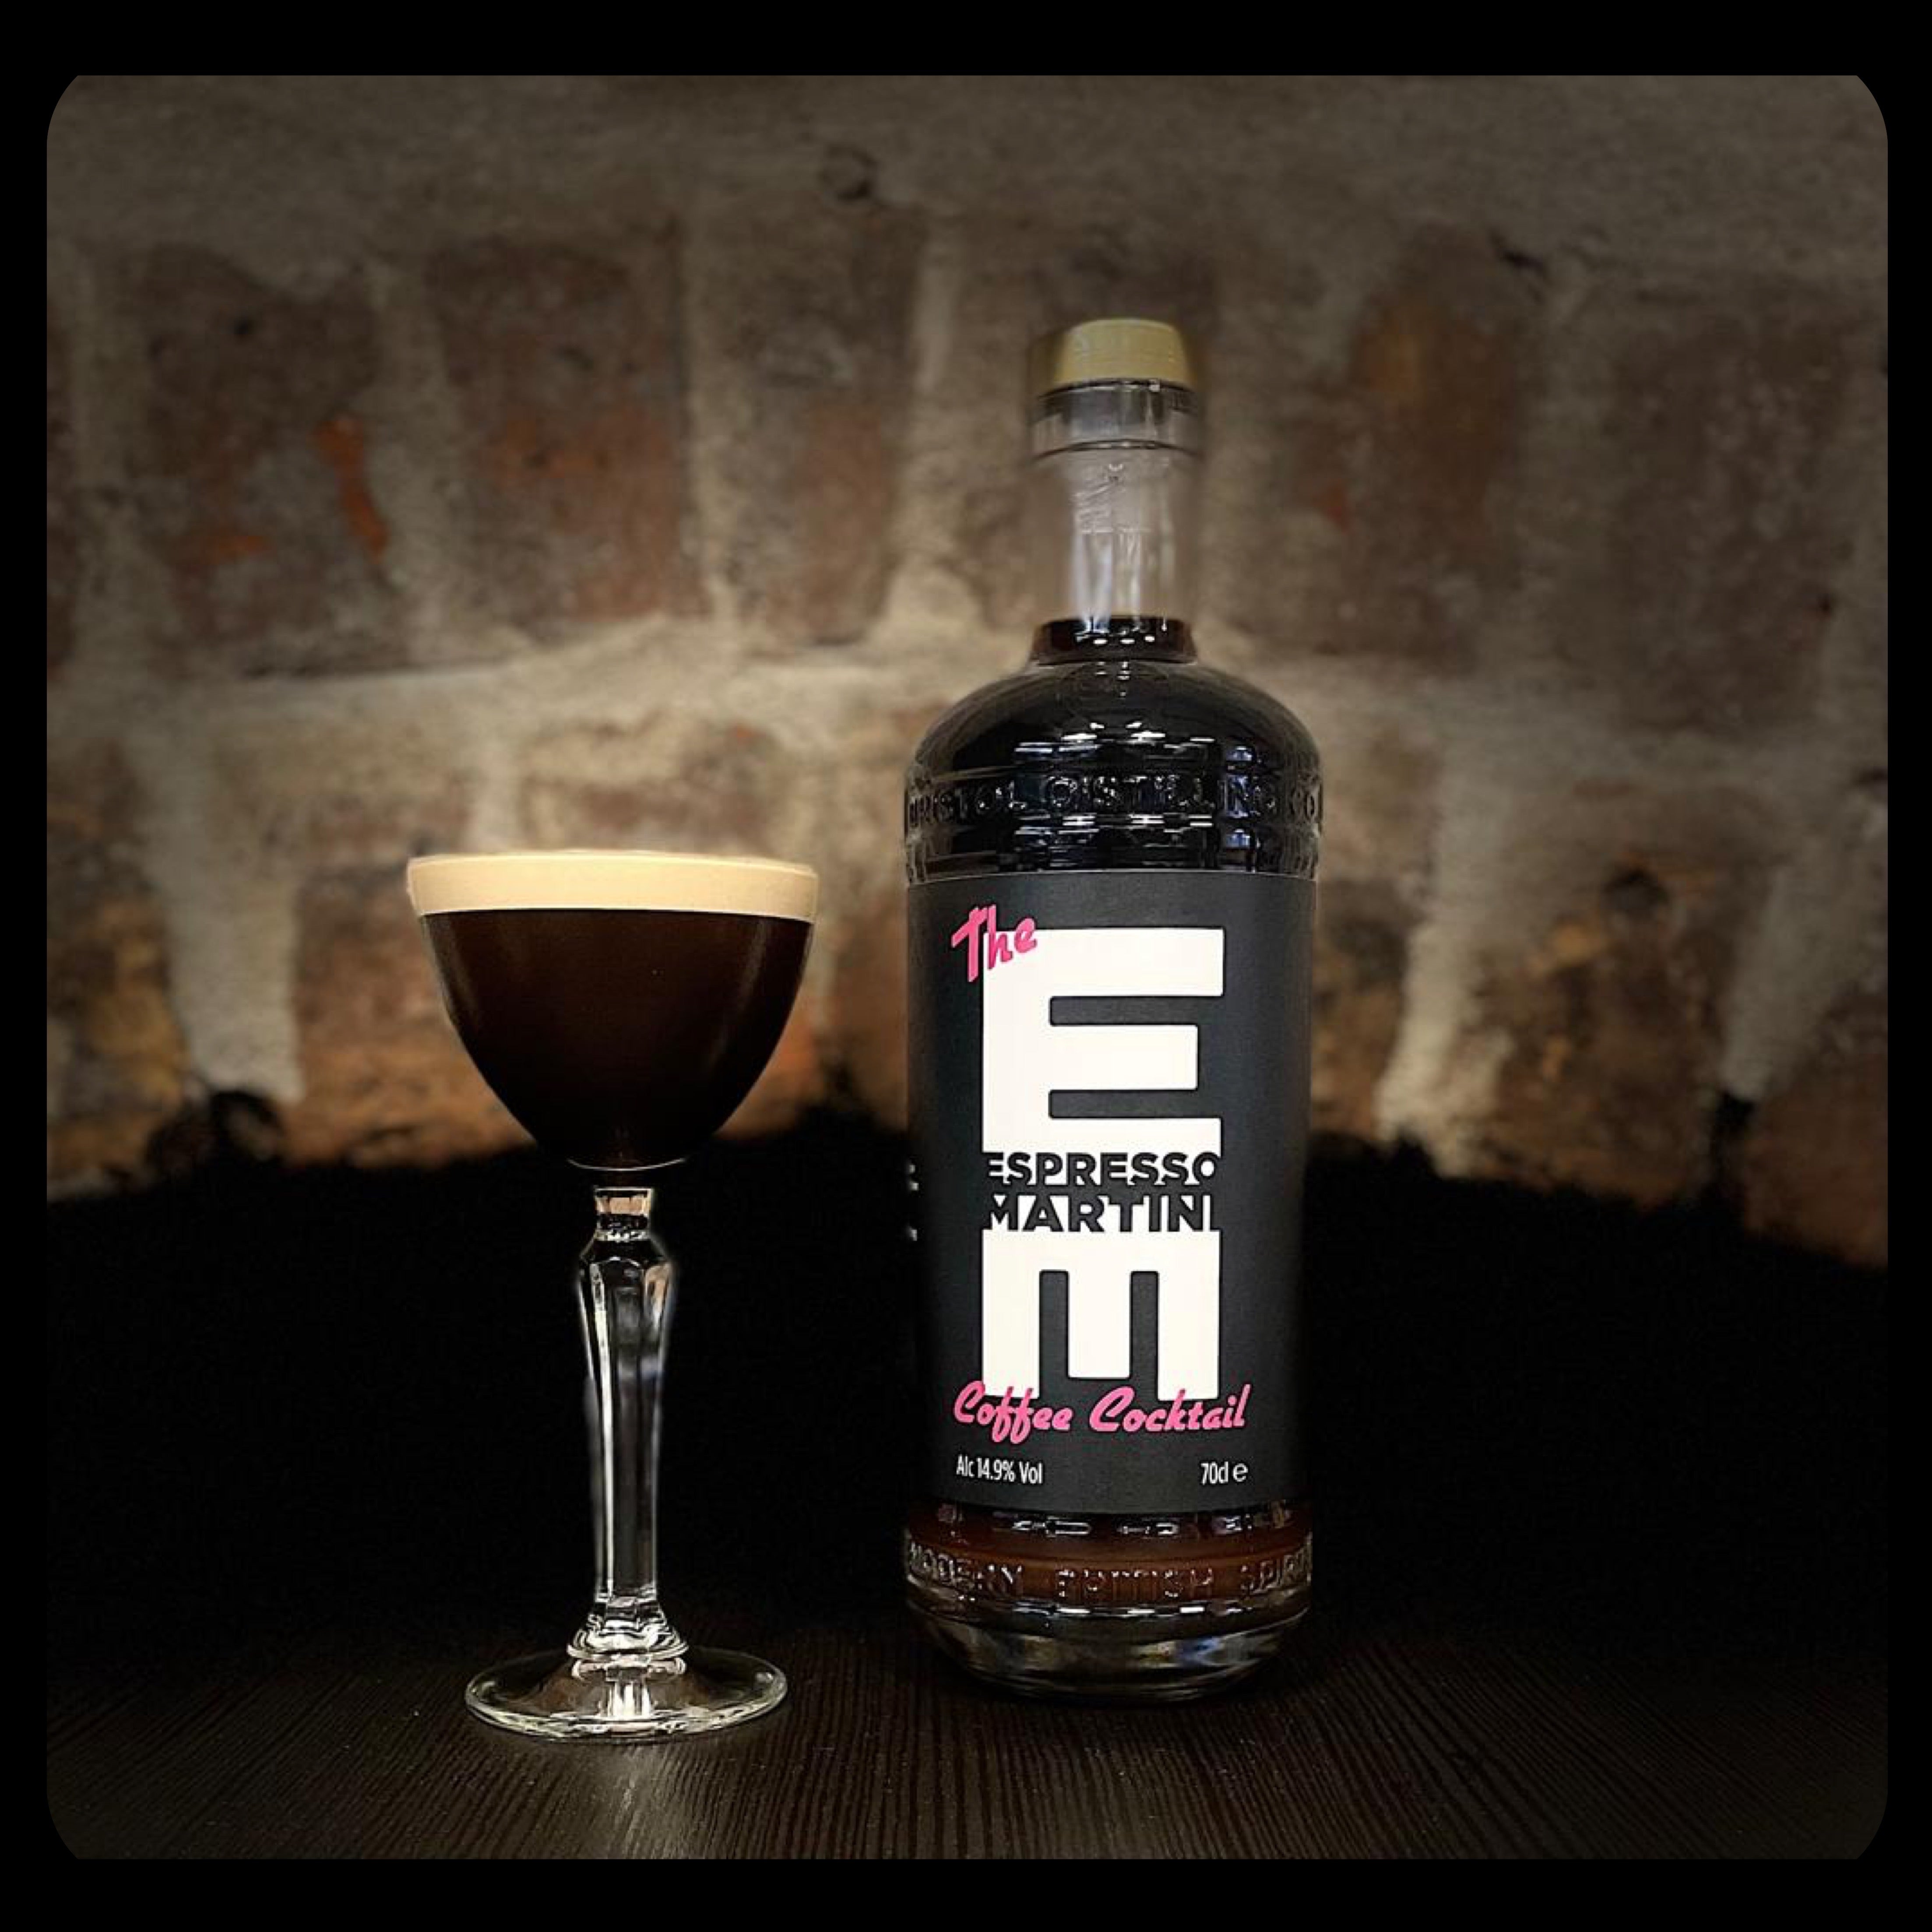 The EM Espresso Martini